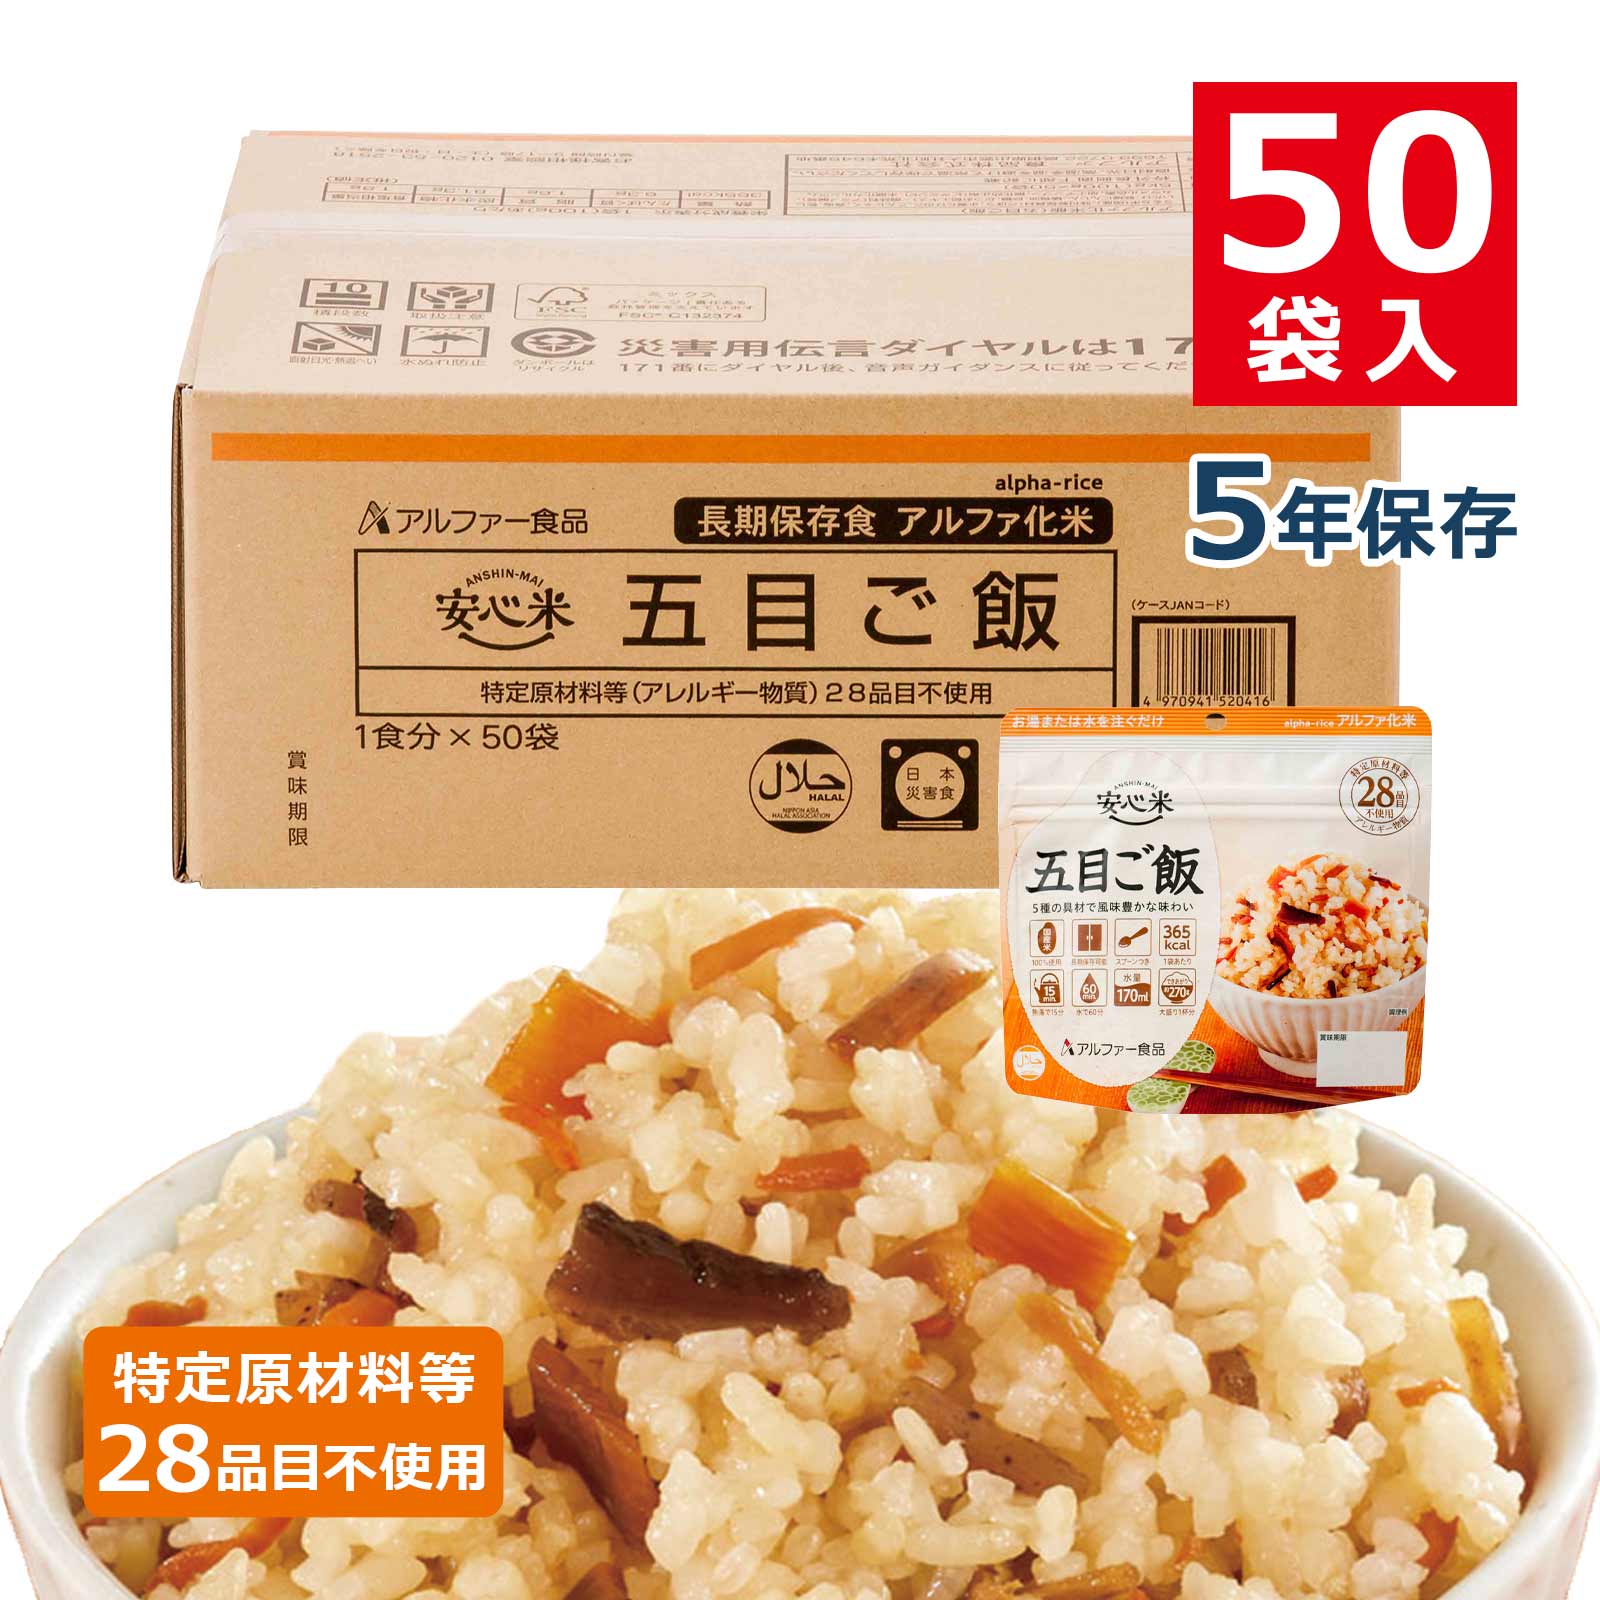 アルファ化米 五目ご飯50食